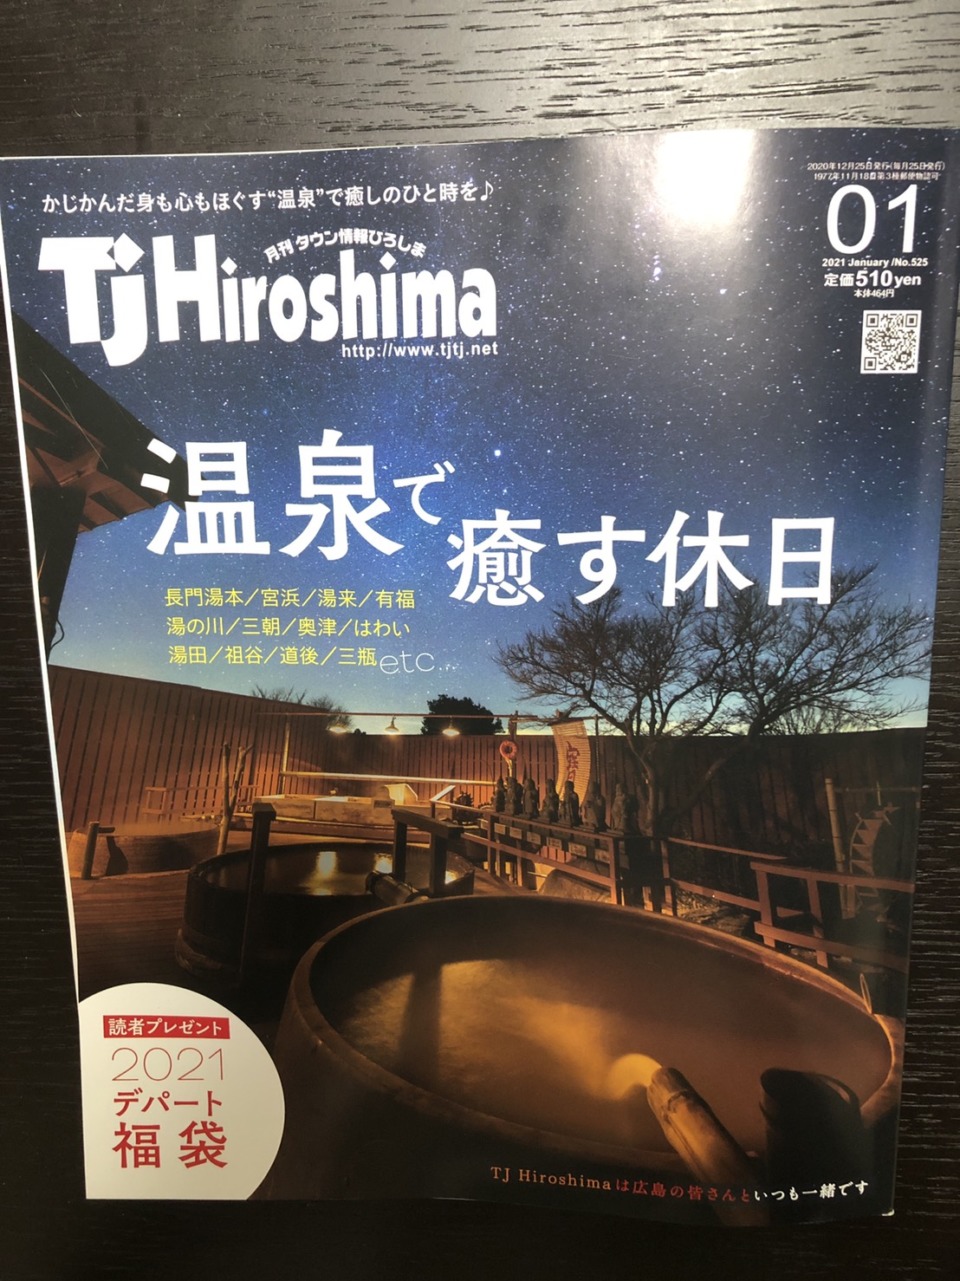 TjHiroshima